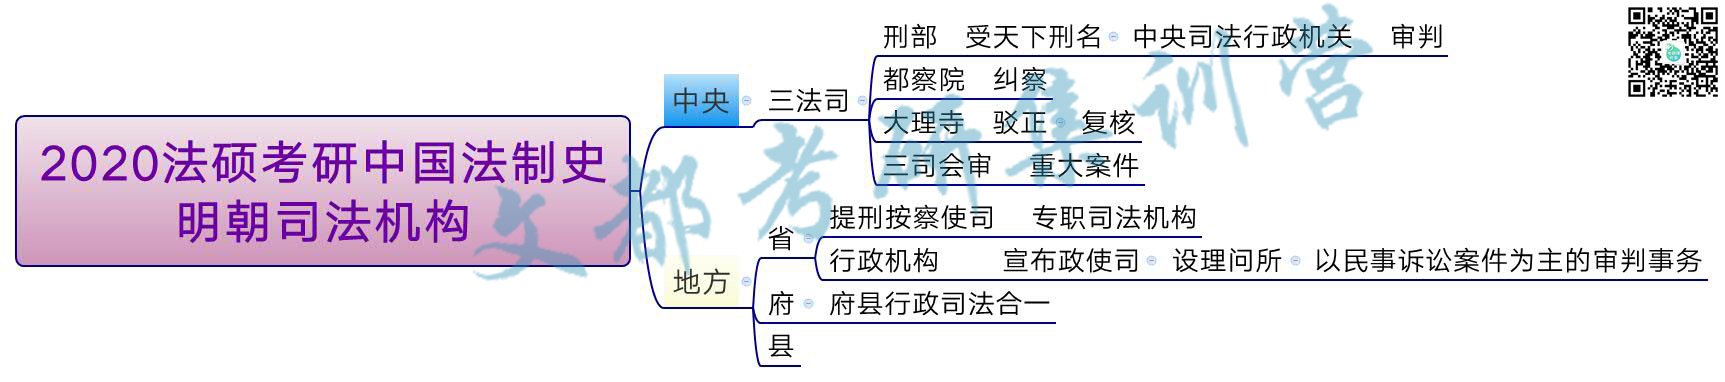 2020法硕考研中国法制史:明朝司法机构